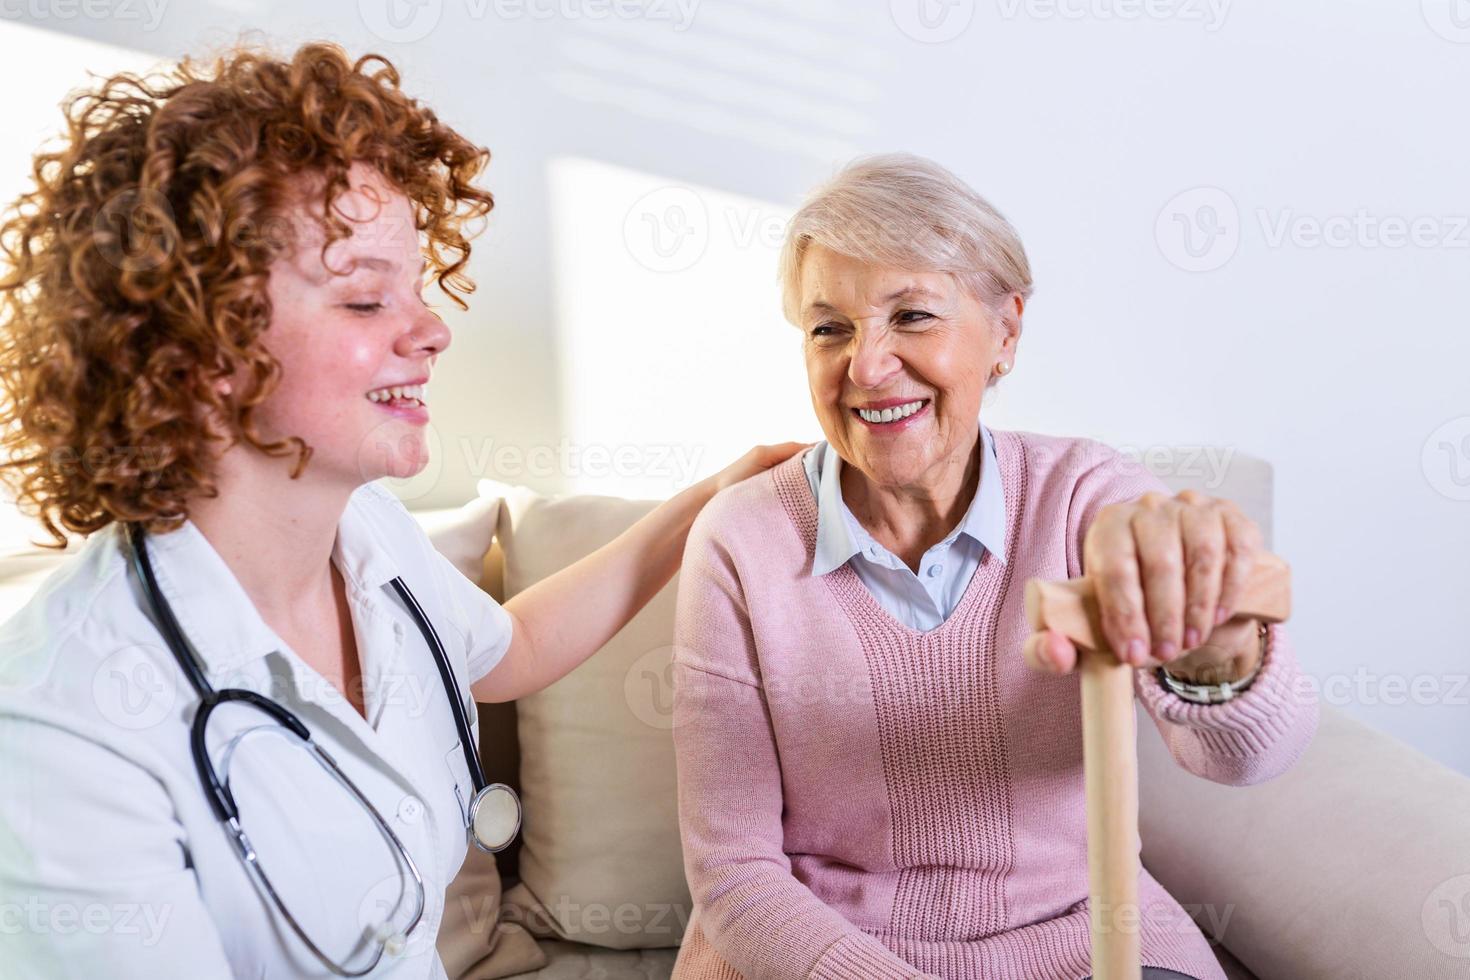 étroite relation positive entre le patient âgé et le soignant. heureuse femme âgée parlant à un soignant amical. jeune jolie soignante et femme heureuse plus âgée photo